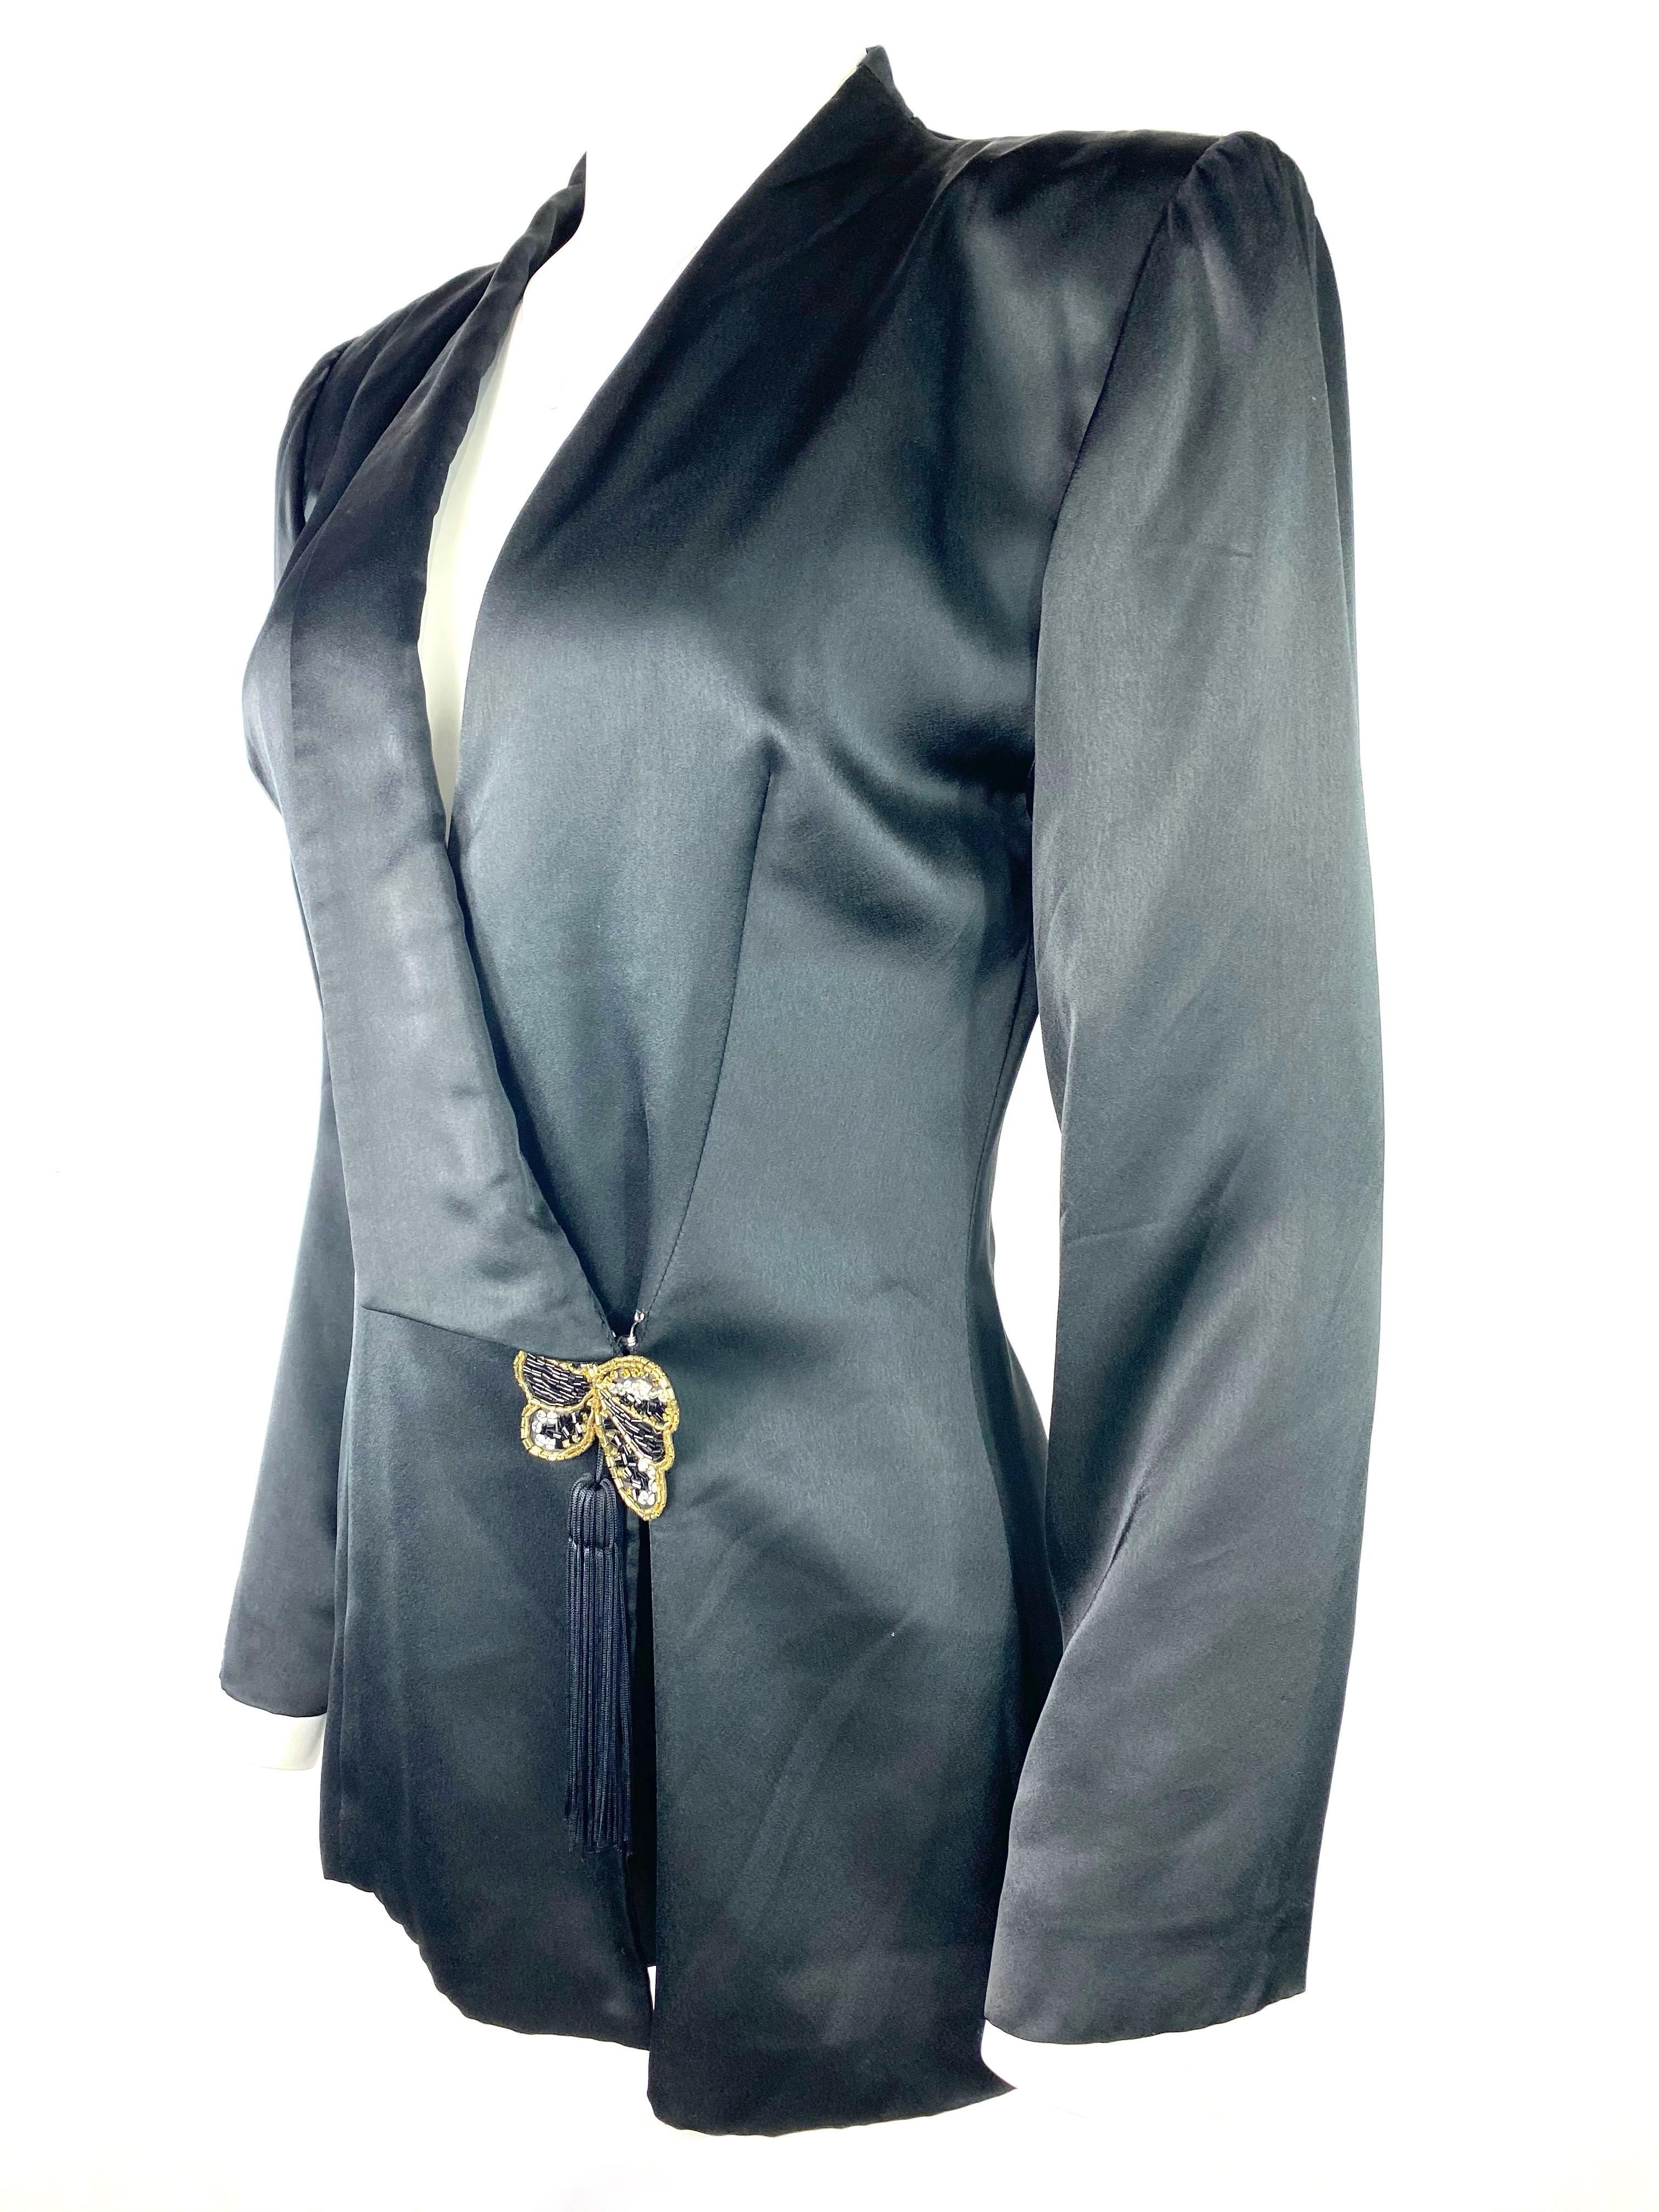 Hanae Mori Boutique Black Silk Blazer Jacket, Size Small For Sale 1